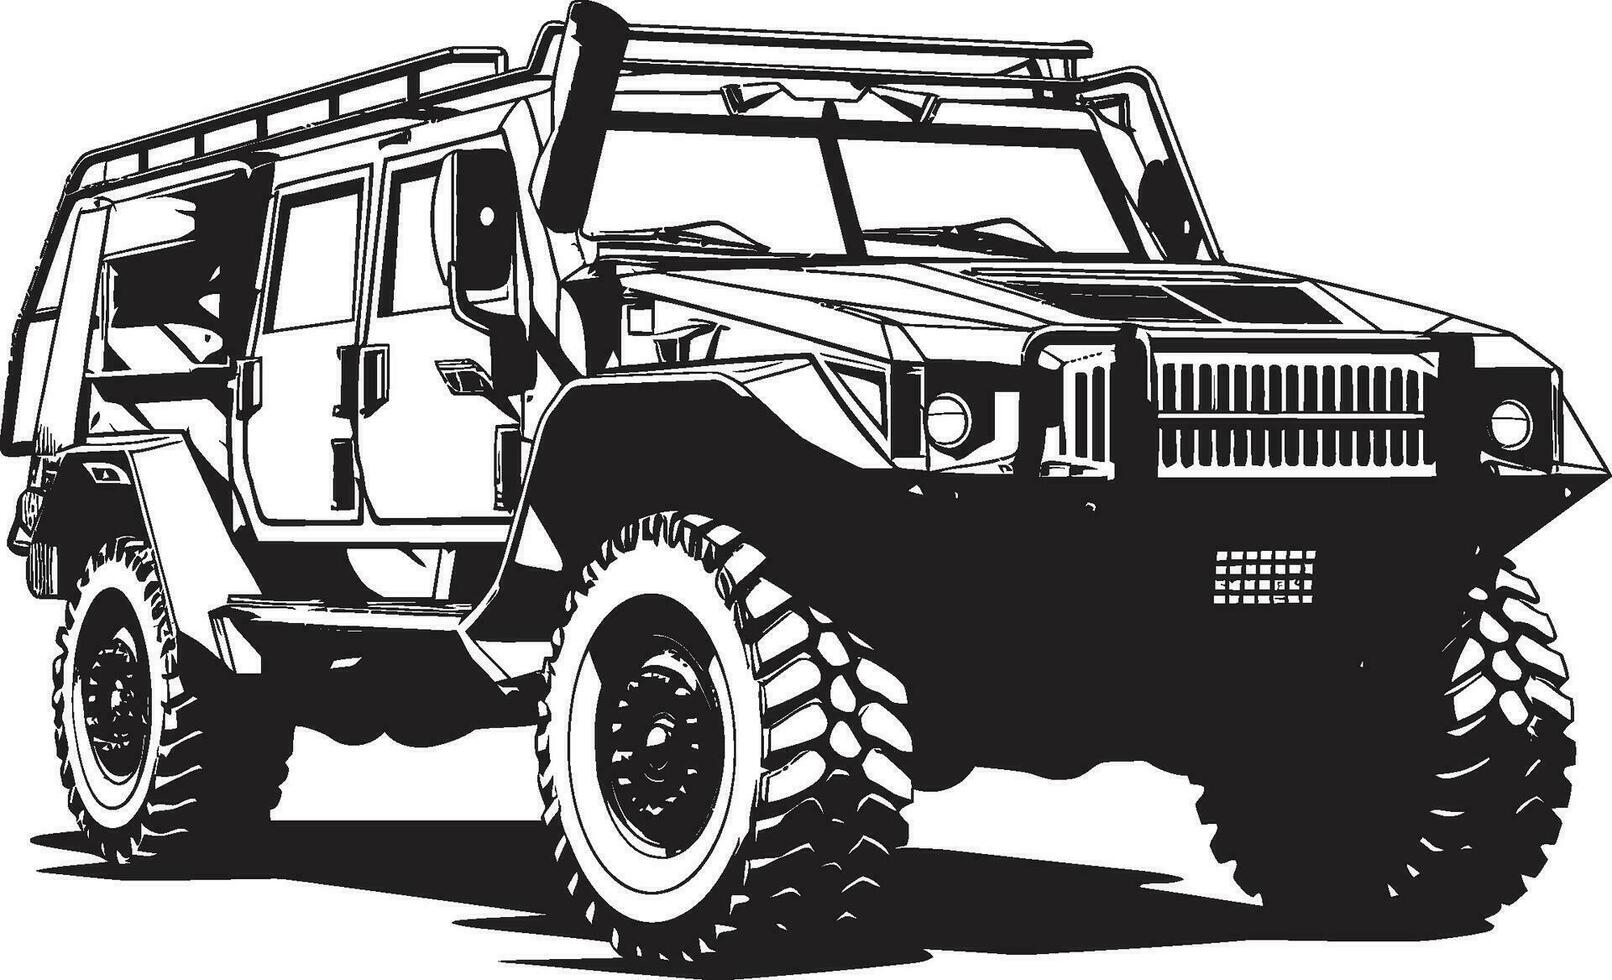 bataille prêt expédition 4x4 noir logo défensive reconnaissance militaire véhicule vecteur conception